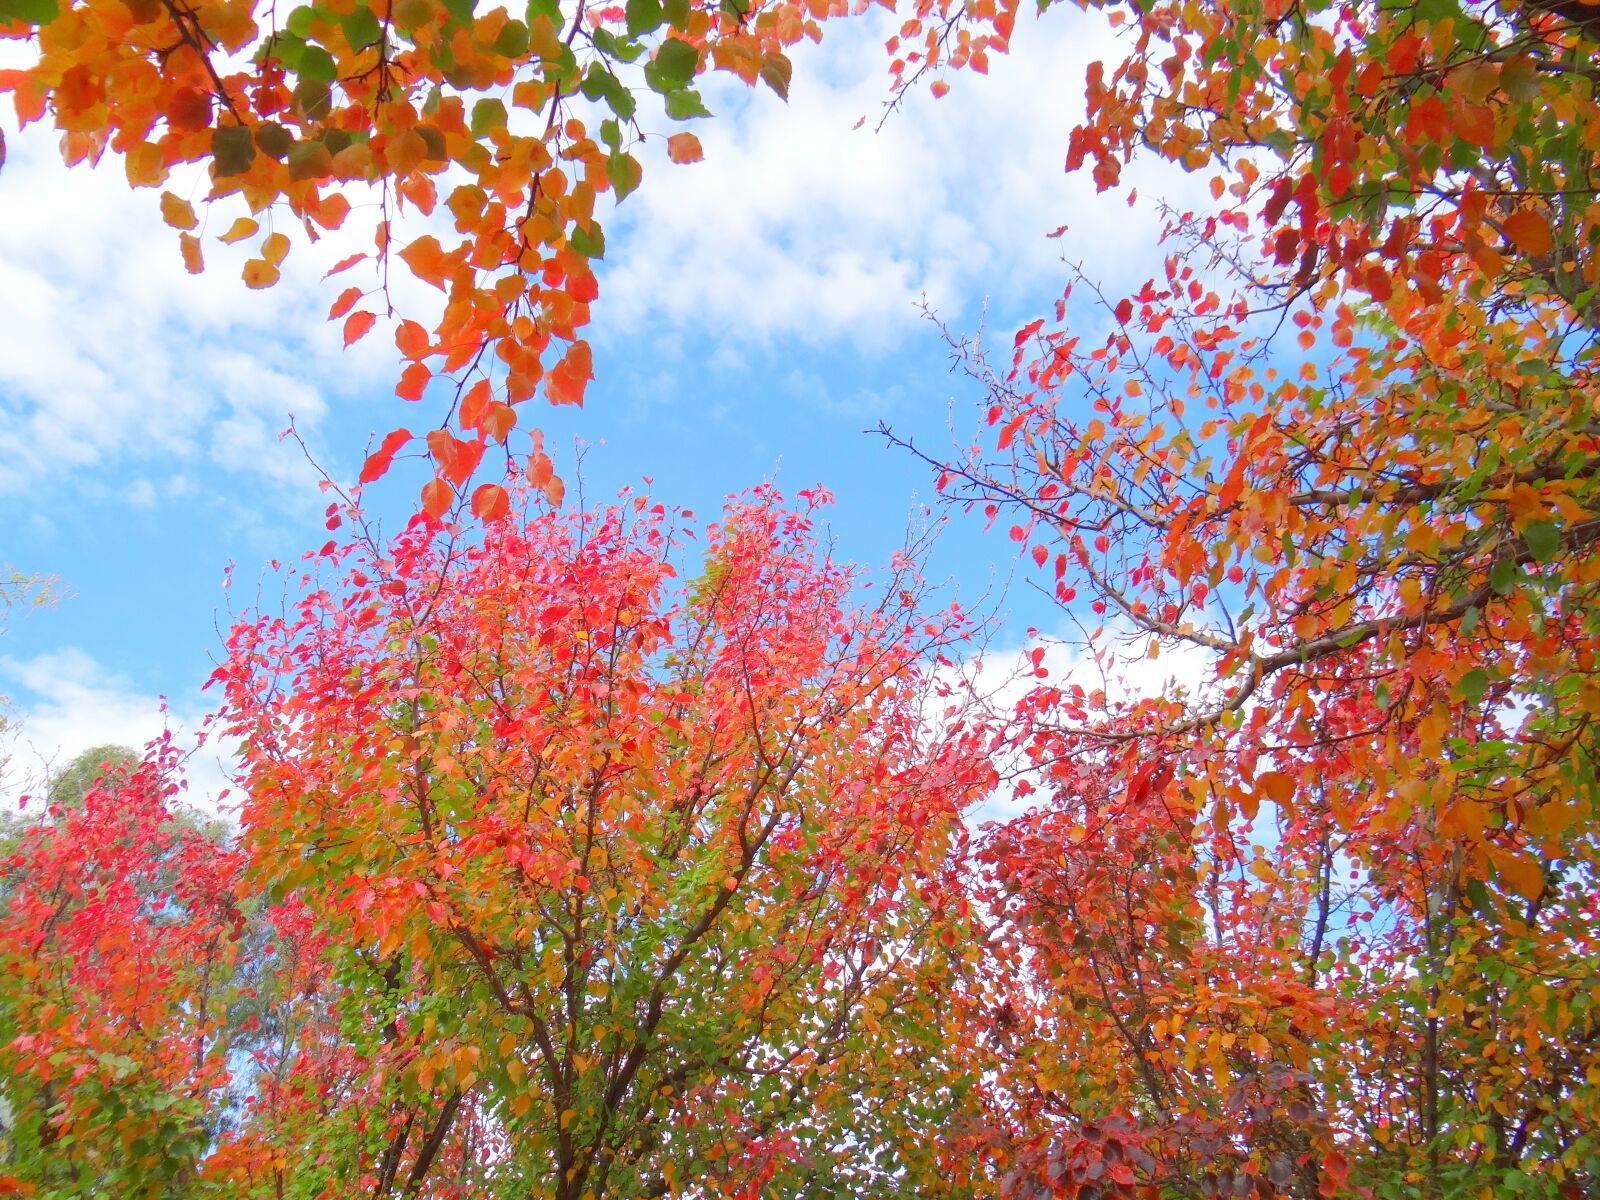 Sony DSC-HX200V sample photo. Autumn, fall, tree photography